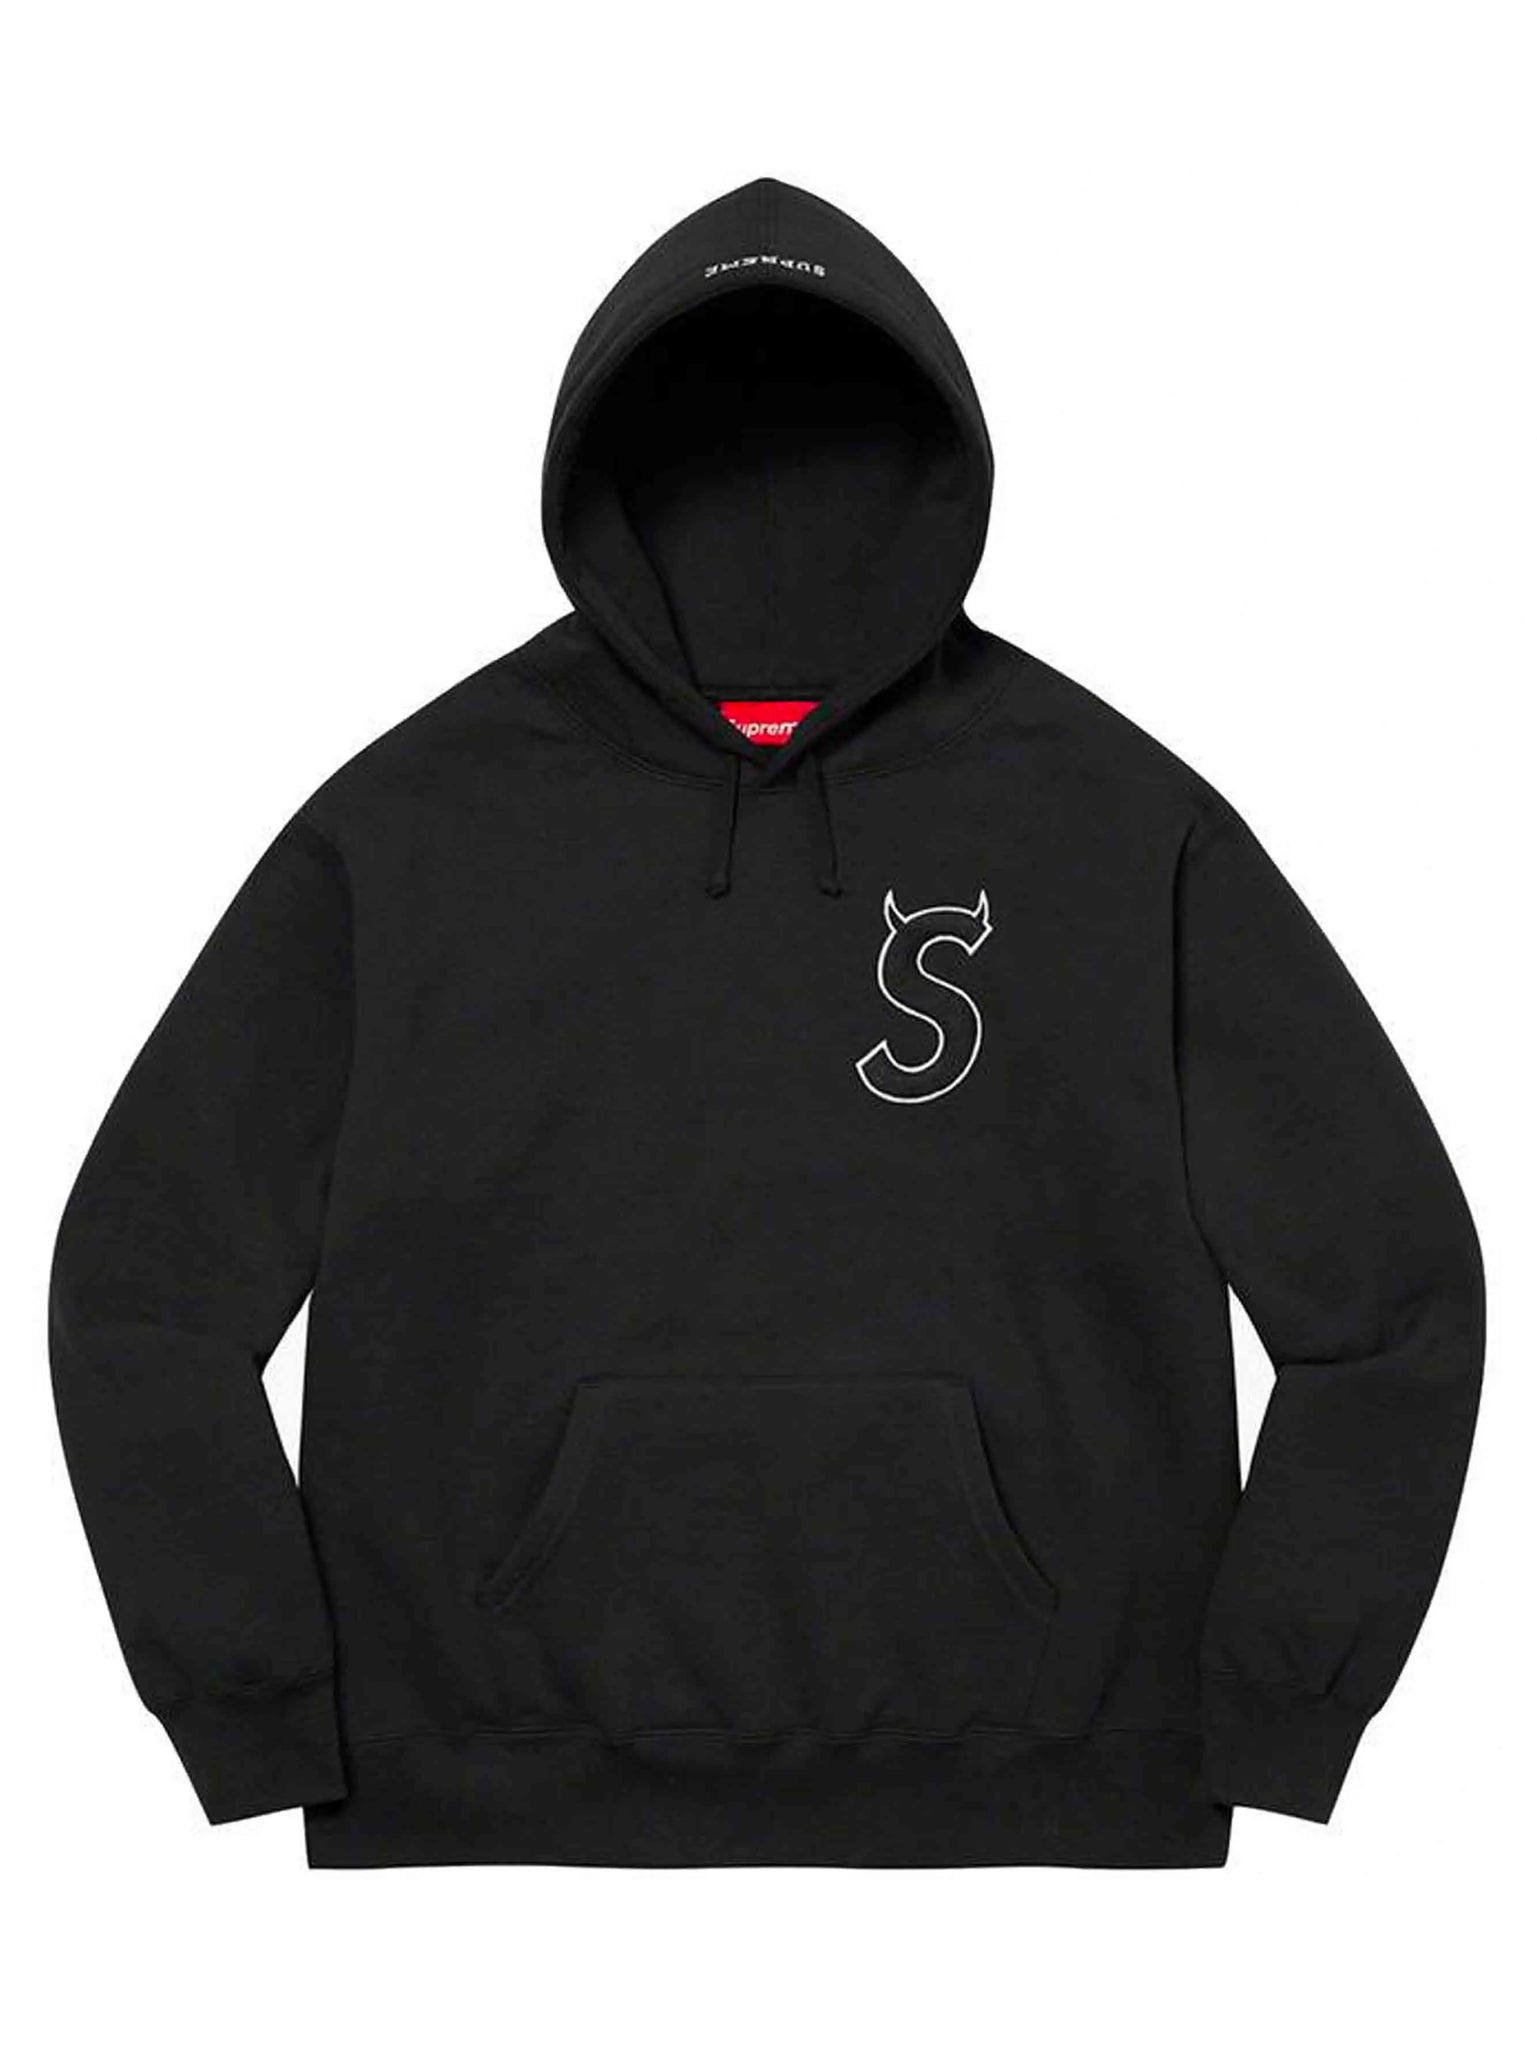 Supreme Cross Box Logo Hooded Sweatshirt Black [FW20] - Prior